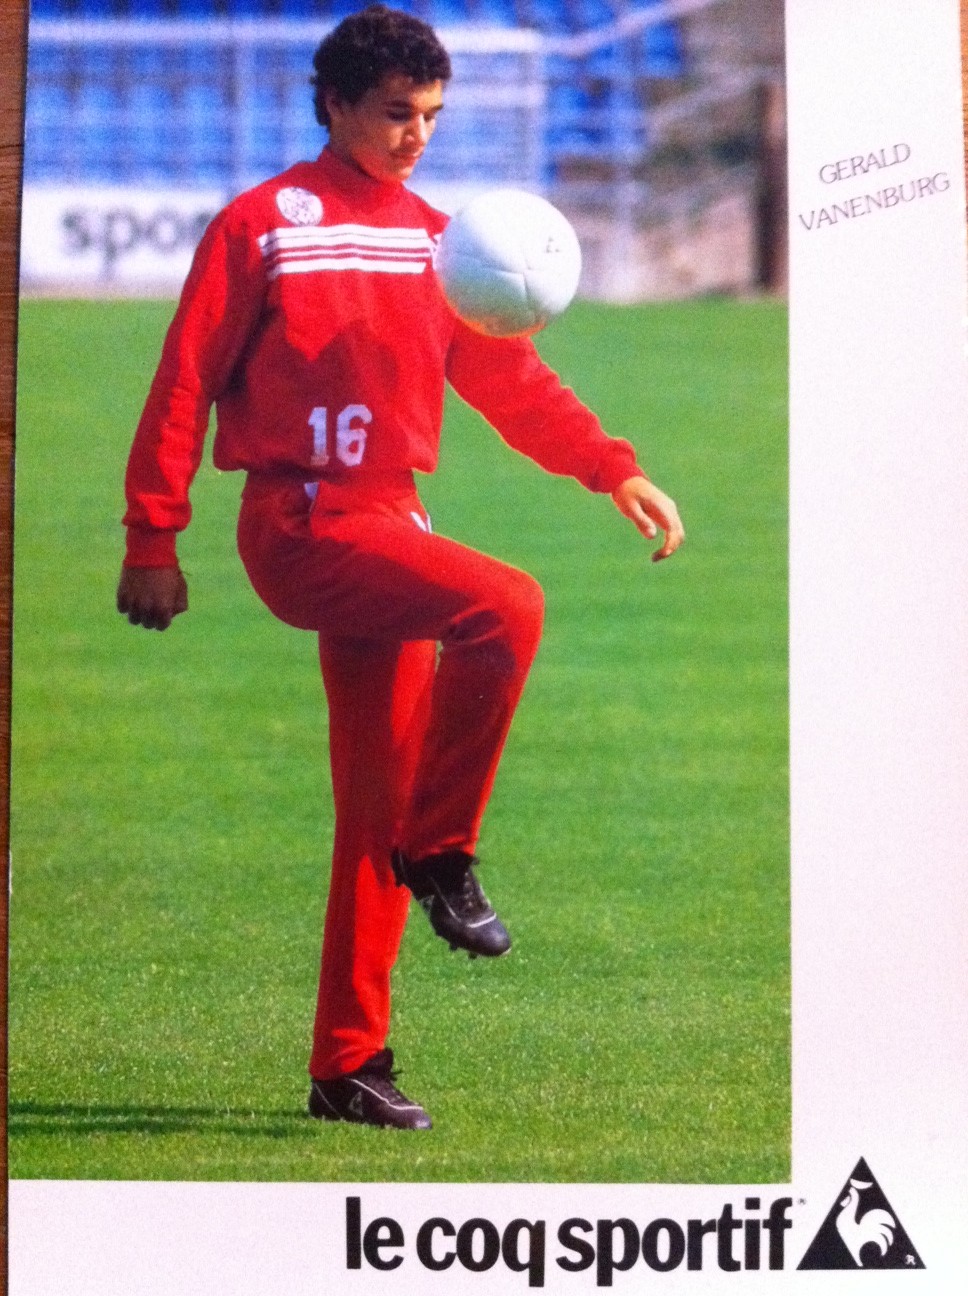 Couscous leiderschap Leger Voetbalansichten afl.1 – Gerald Vanenburg – De beste voetballer van de  wereld